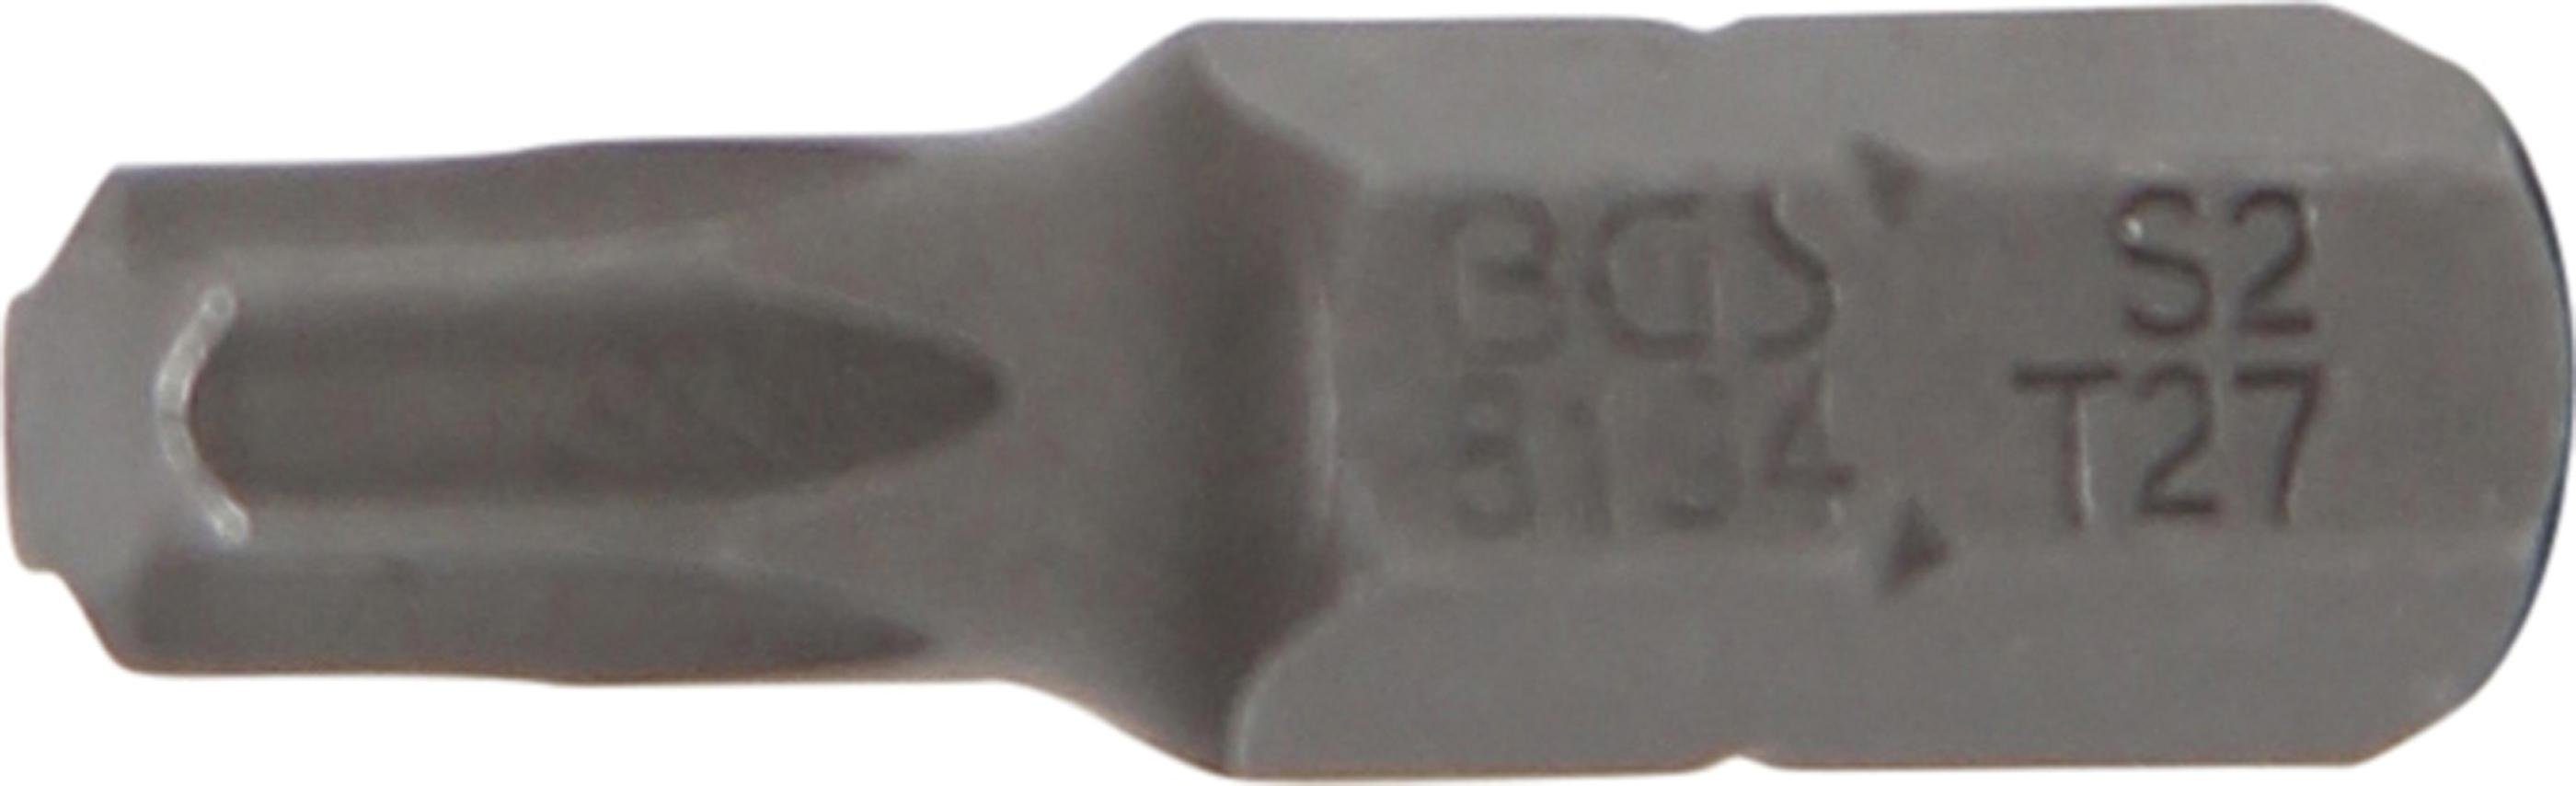 BGS technic Bit-Schraubendreher Bit, Antrieb Außensechskant 6,3 mm (1/4), T-Profil (für Torx) T27